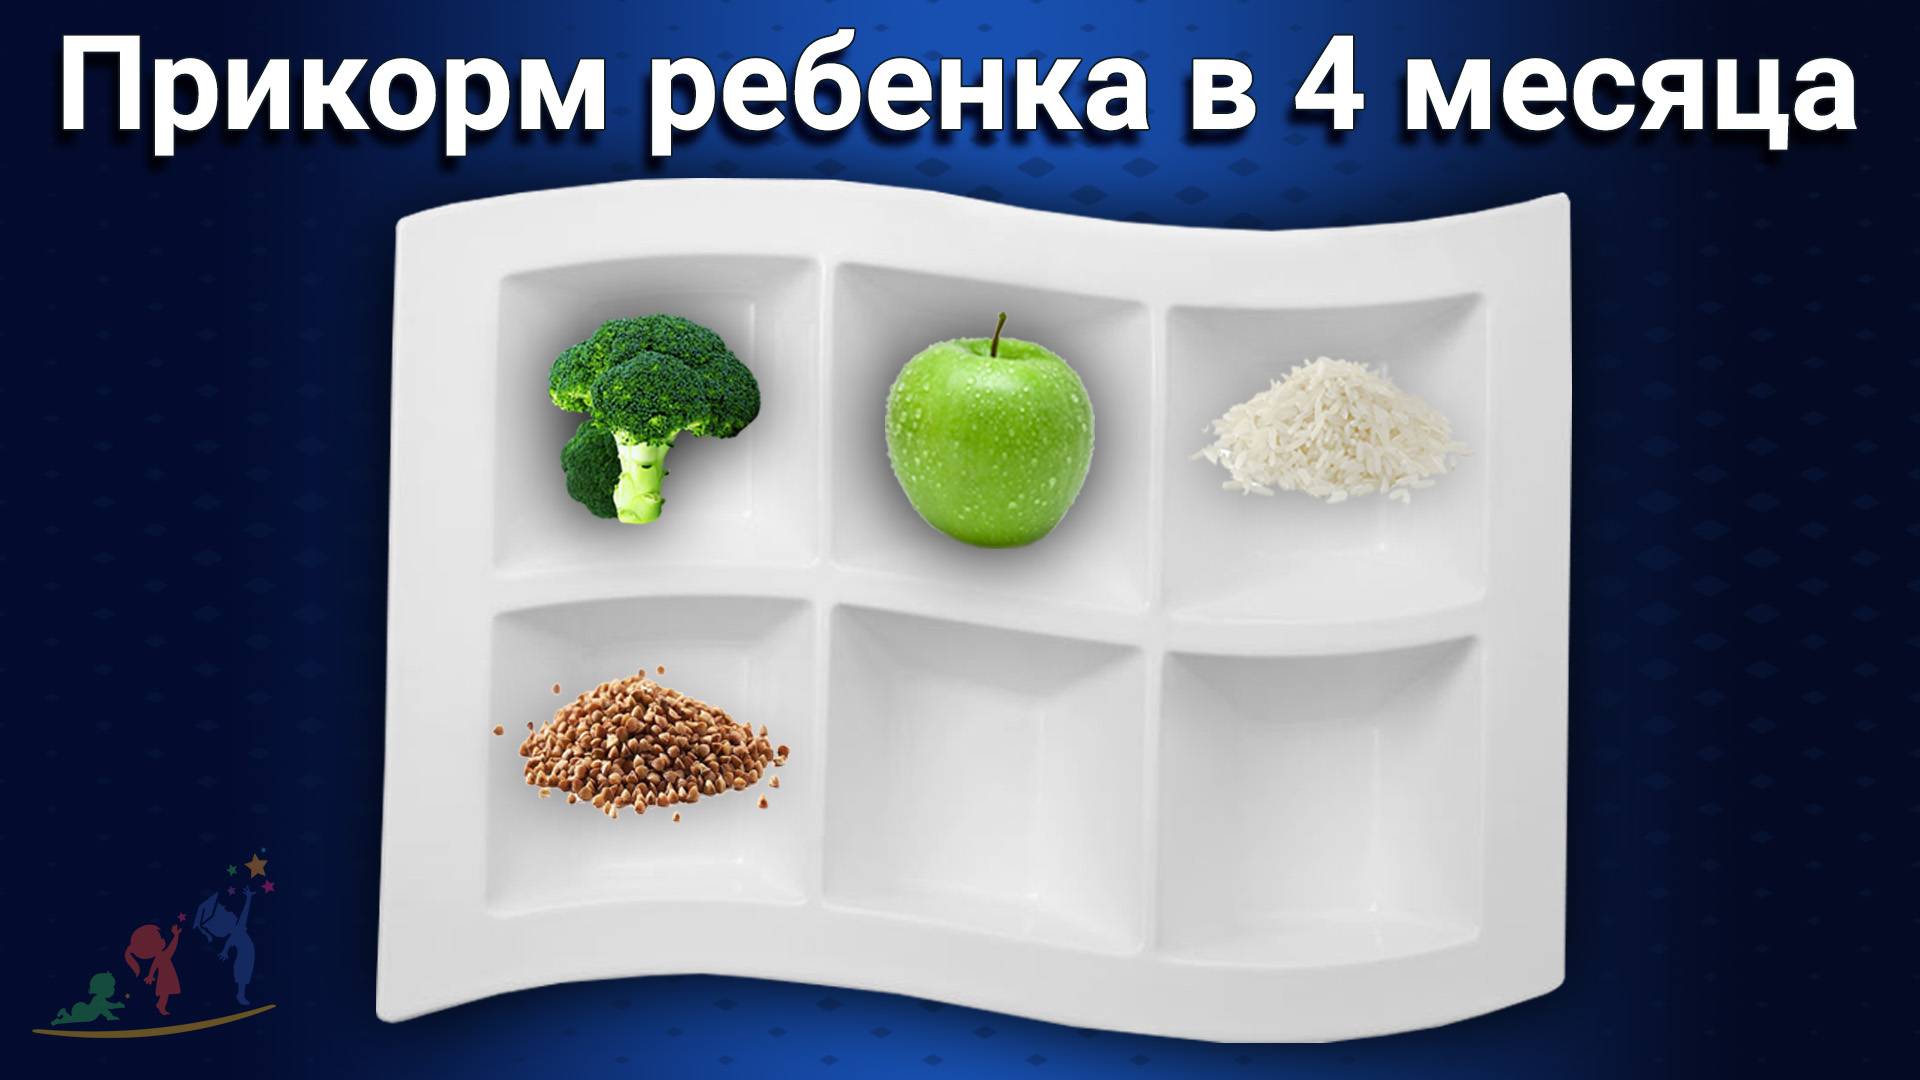 Сколько должен съедать ребенок в 9 месяцев? - запись пользователя юлия (julymystery) в дневнике - babyblog.ru